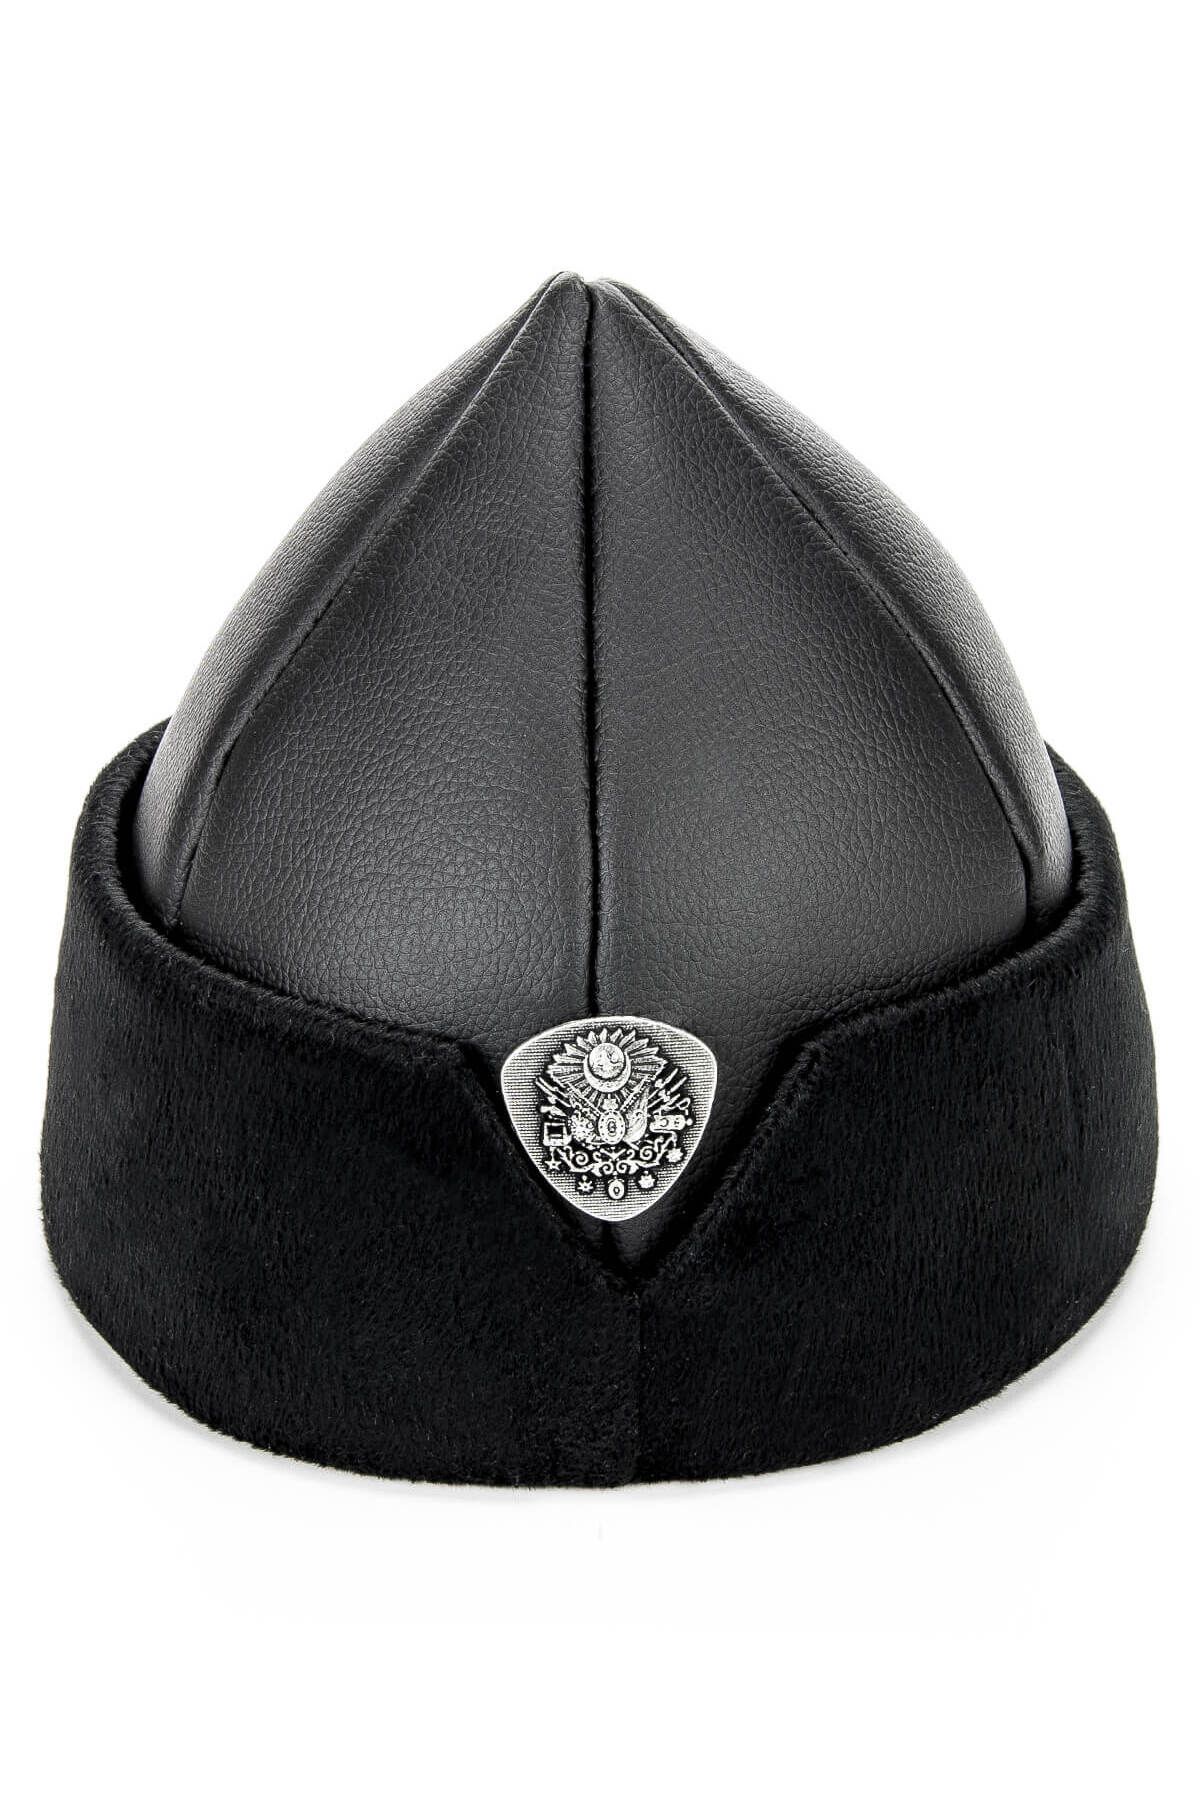 İhvan Ertuğrul Börk Şapka - Siyah - 2005